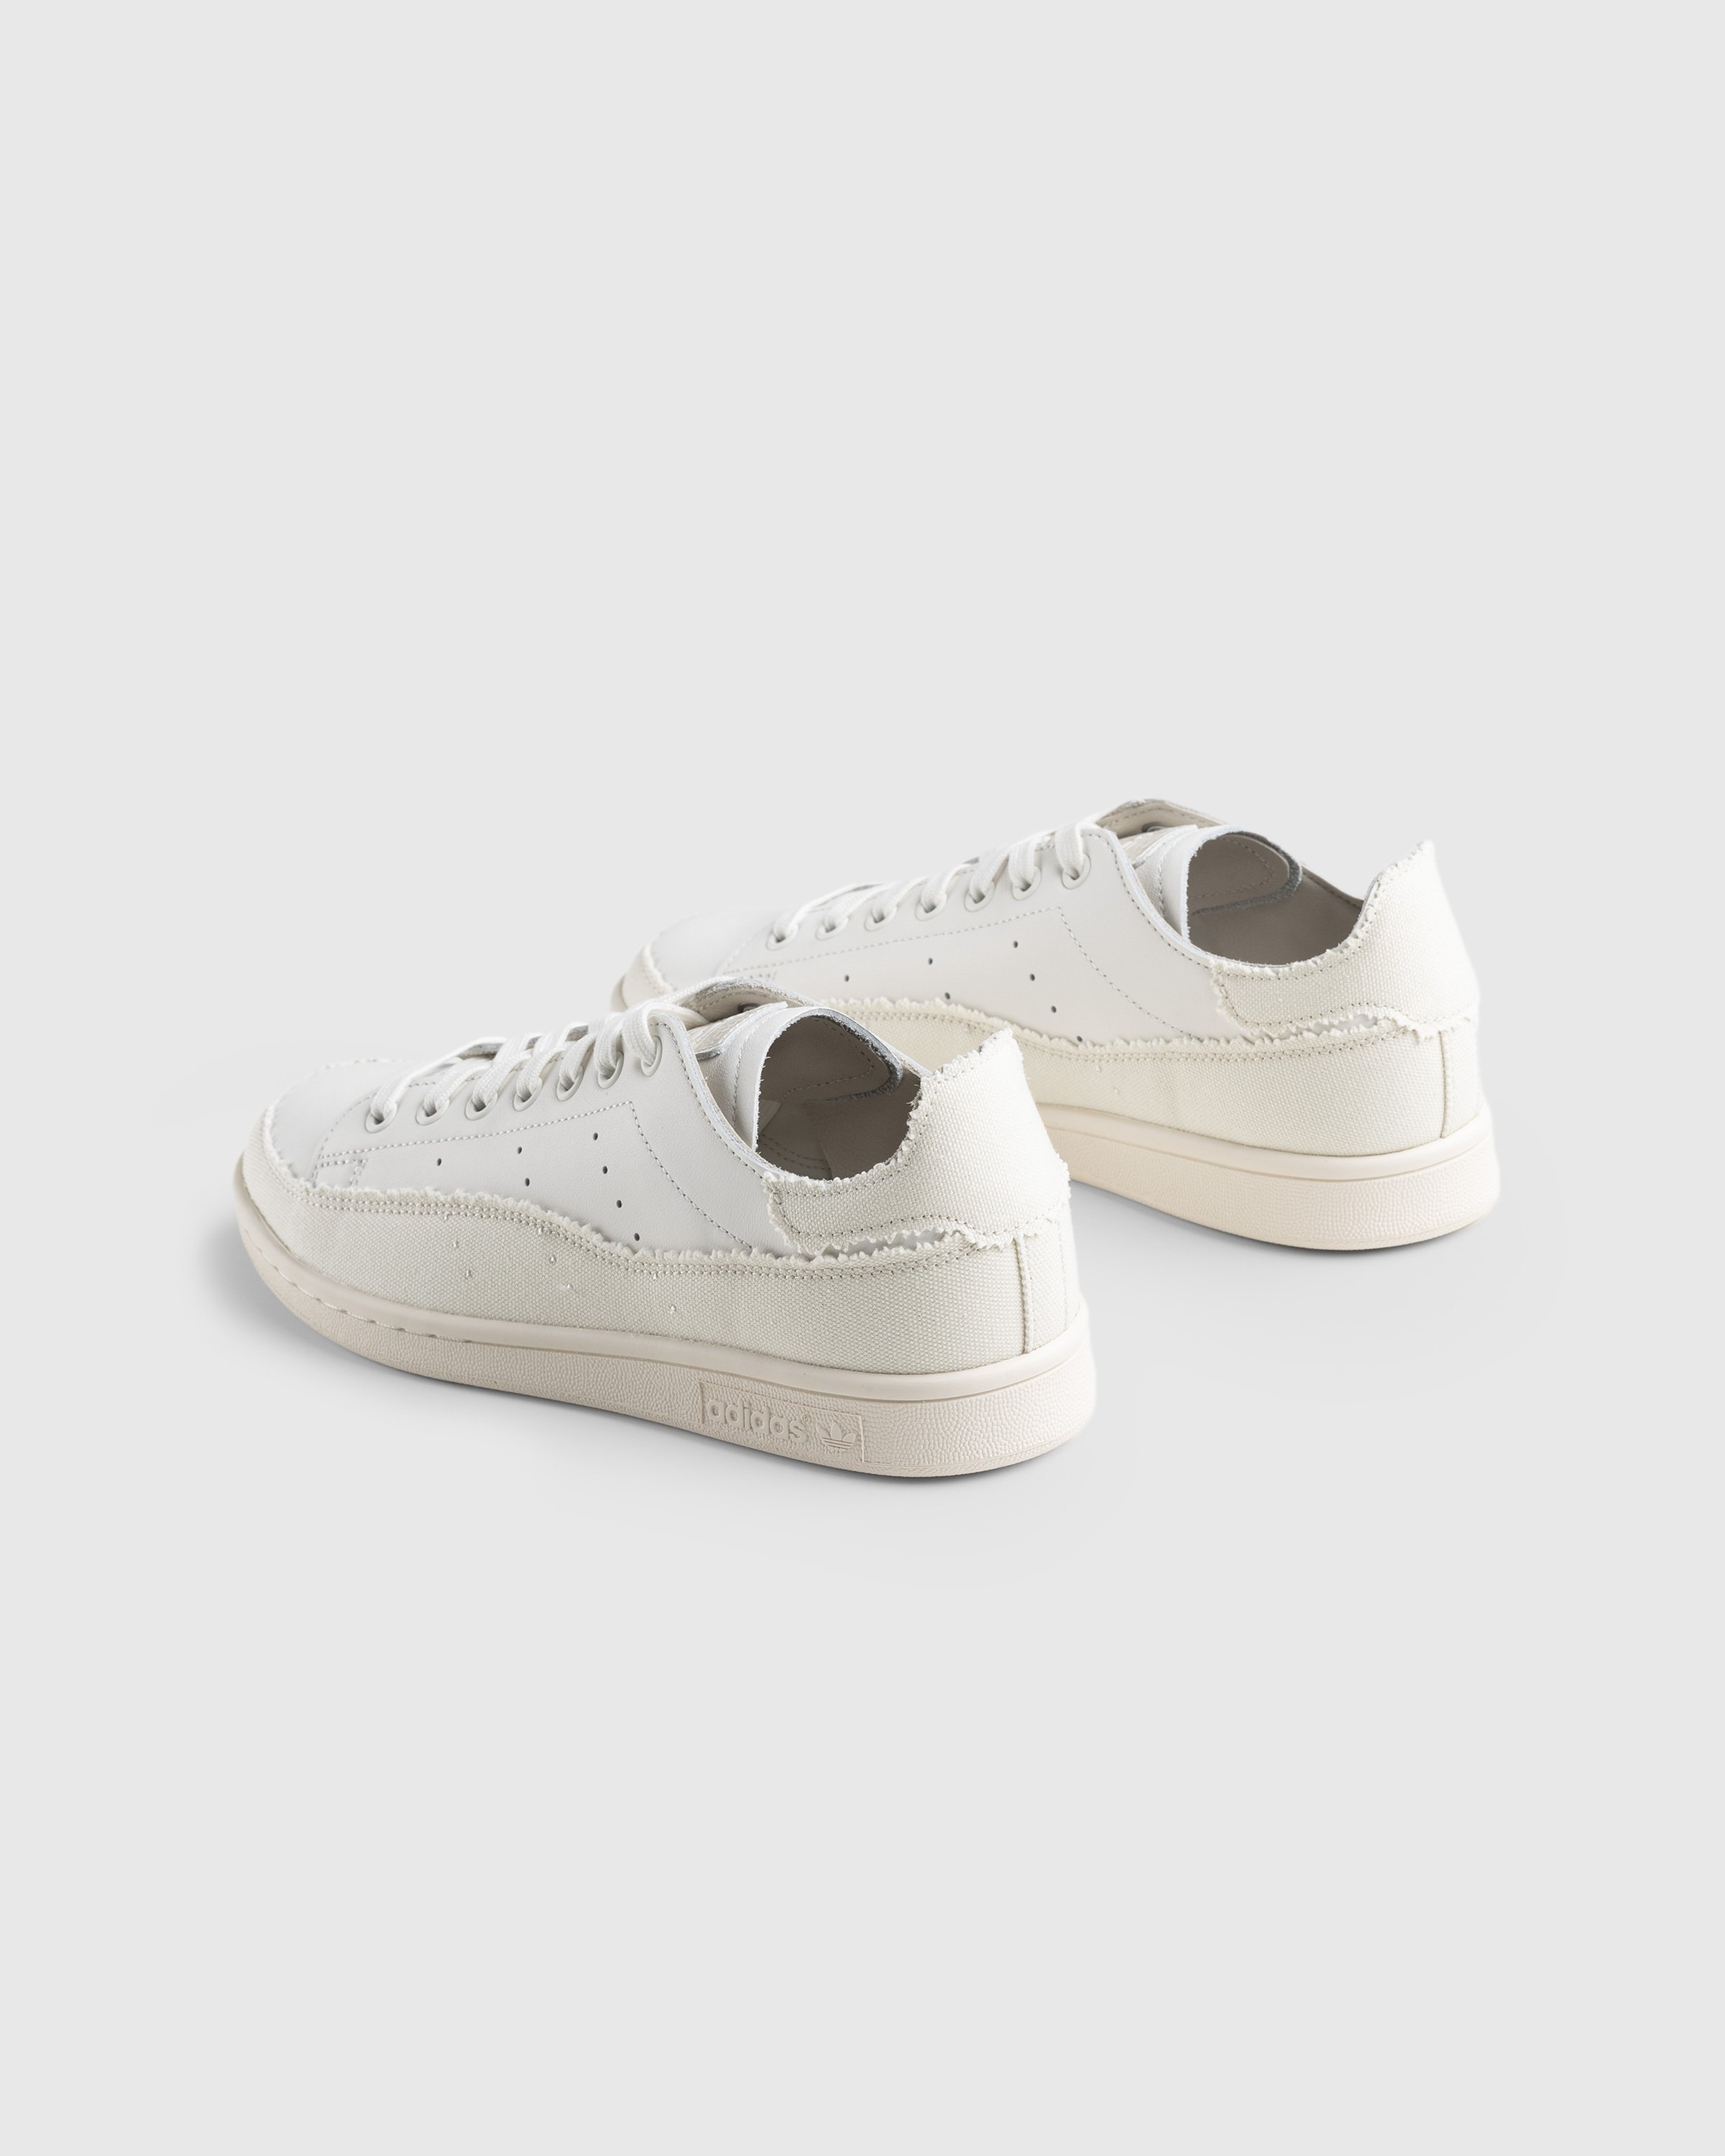 Adidas - Stan Smith Recon White - Footwear - White - Image 4